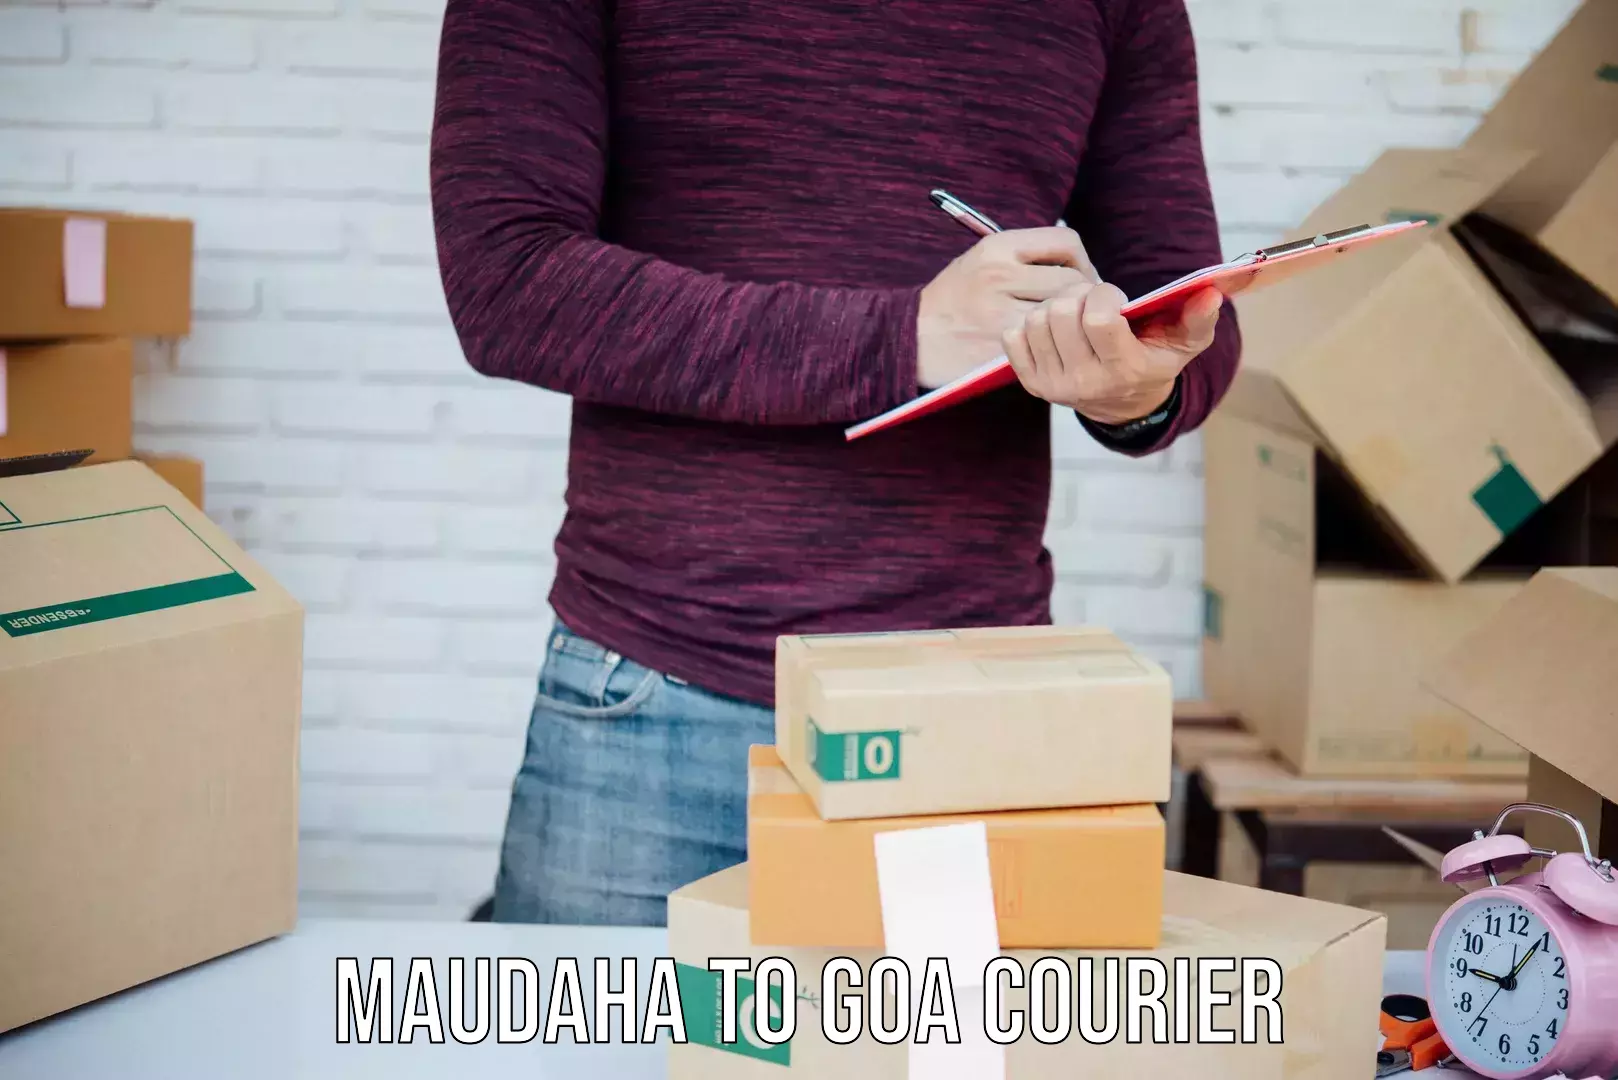 Quick courier services Maudaha to Goa